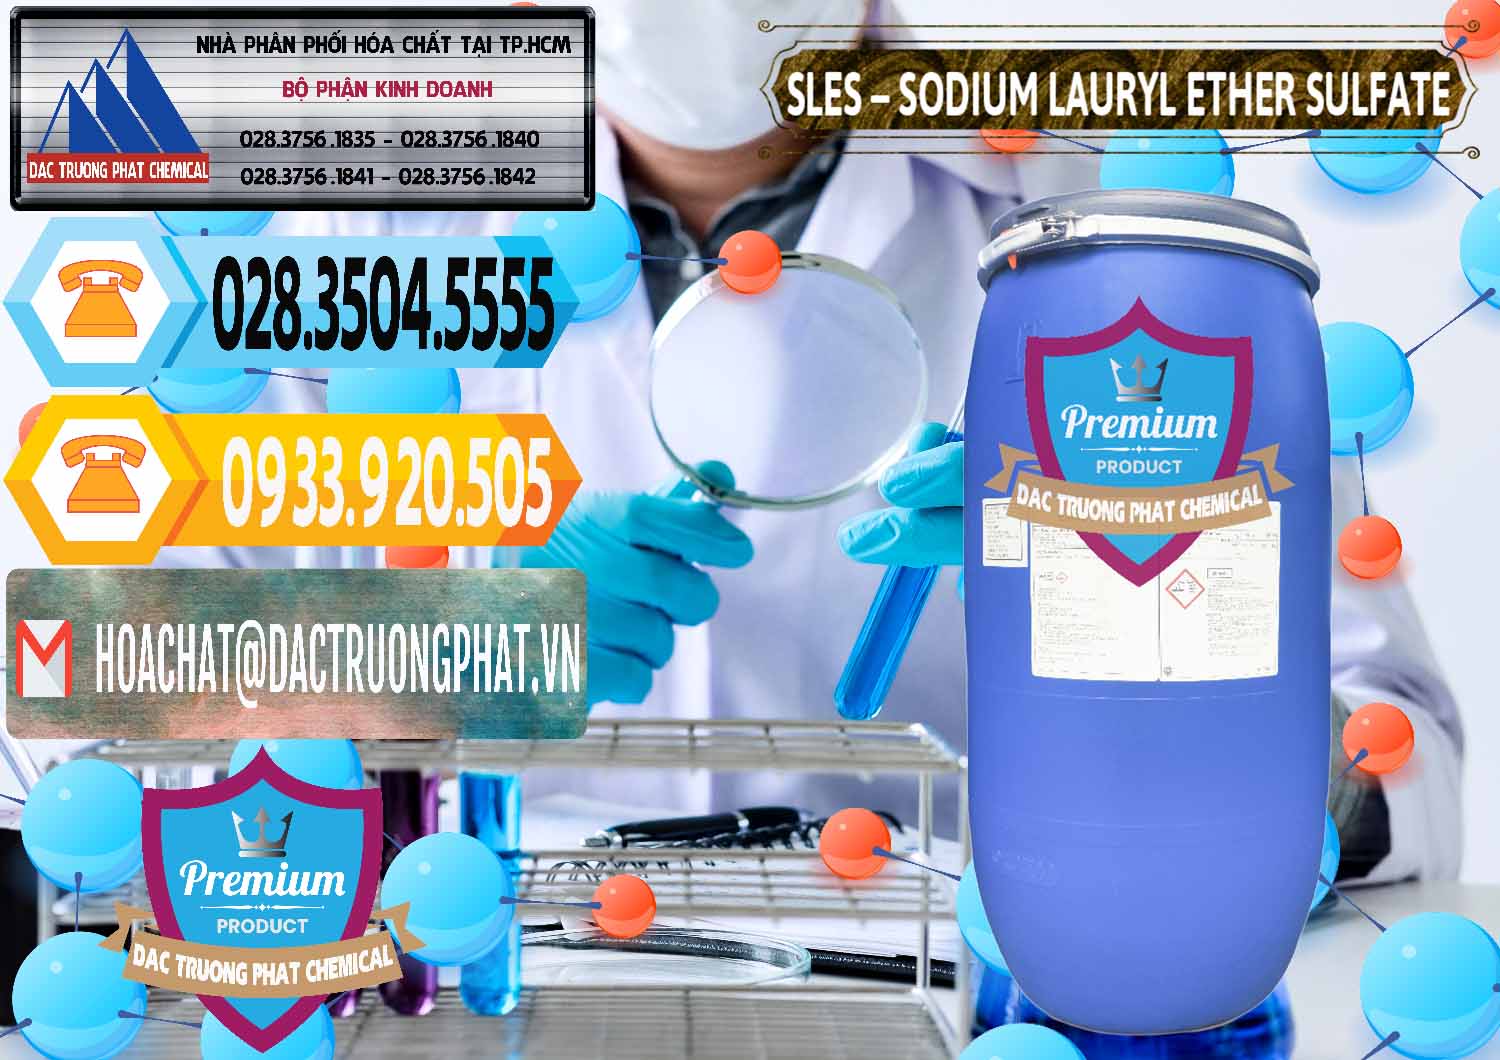 Nơi chuyên bán & cung ứng Chất Tạo Bọt Sles - Sodium Lauryl Ether Sulphate Kao Indonesia - 0046 - Cty chuyên phân phối - kinh doanh hóa chất tại TP.HCM - hoachattayrua.net